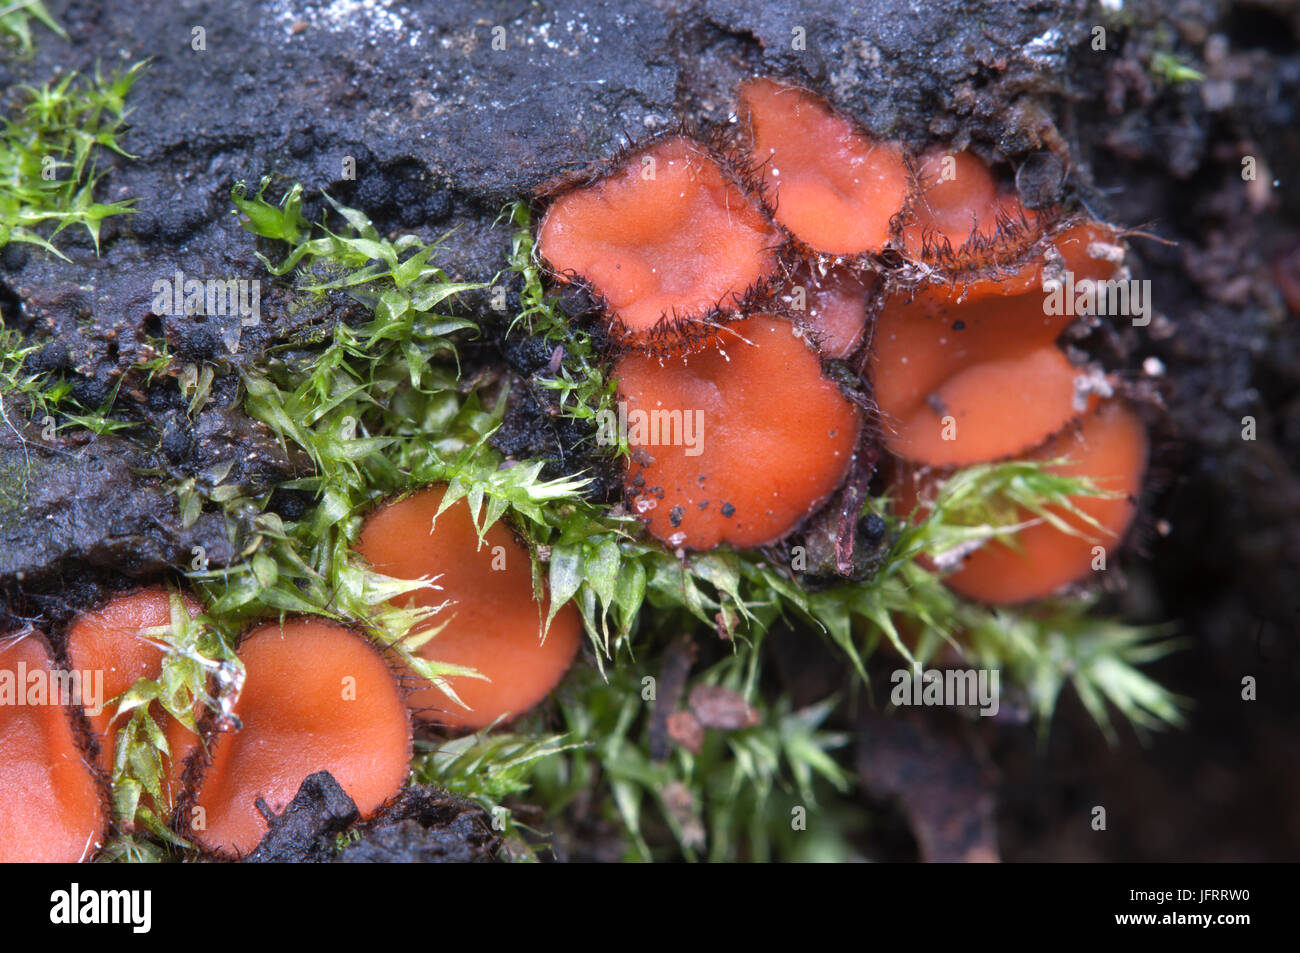 Scutellinia sp. fungus, close up shot, local focus Stock Photo